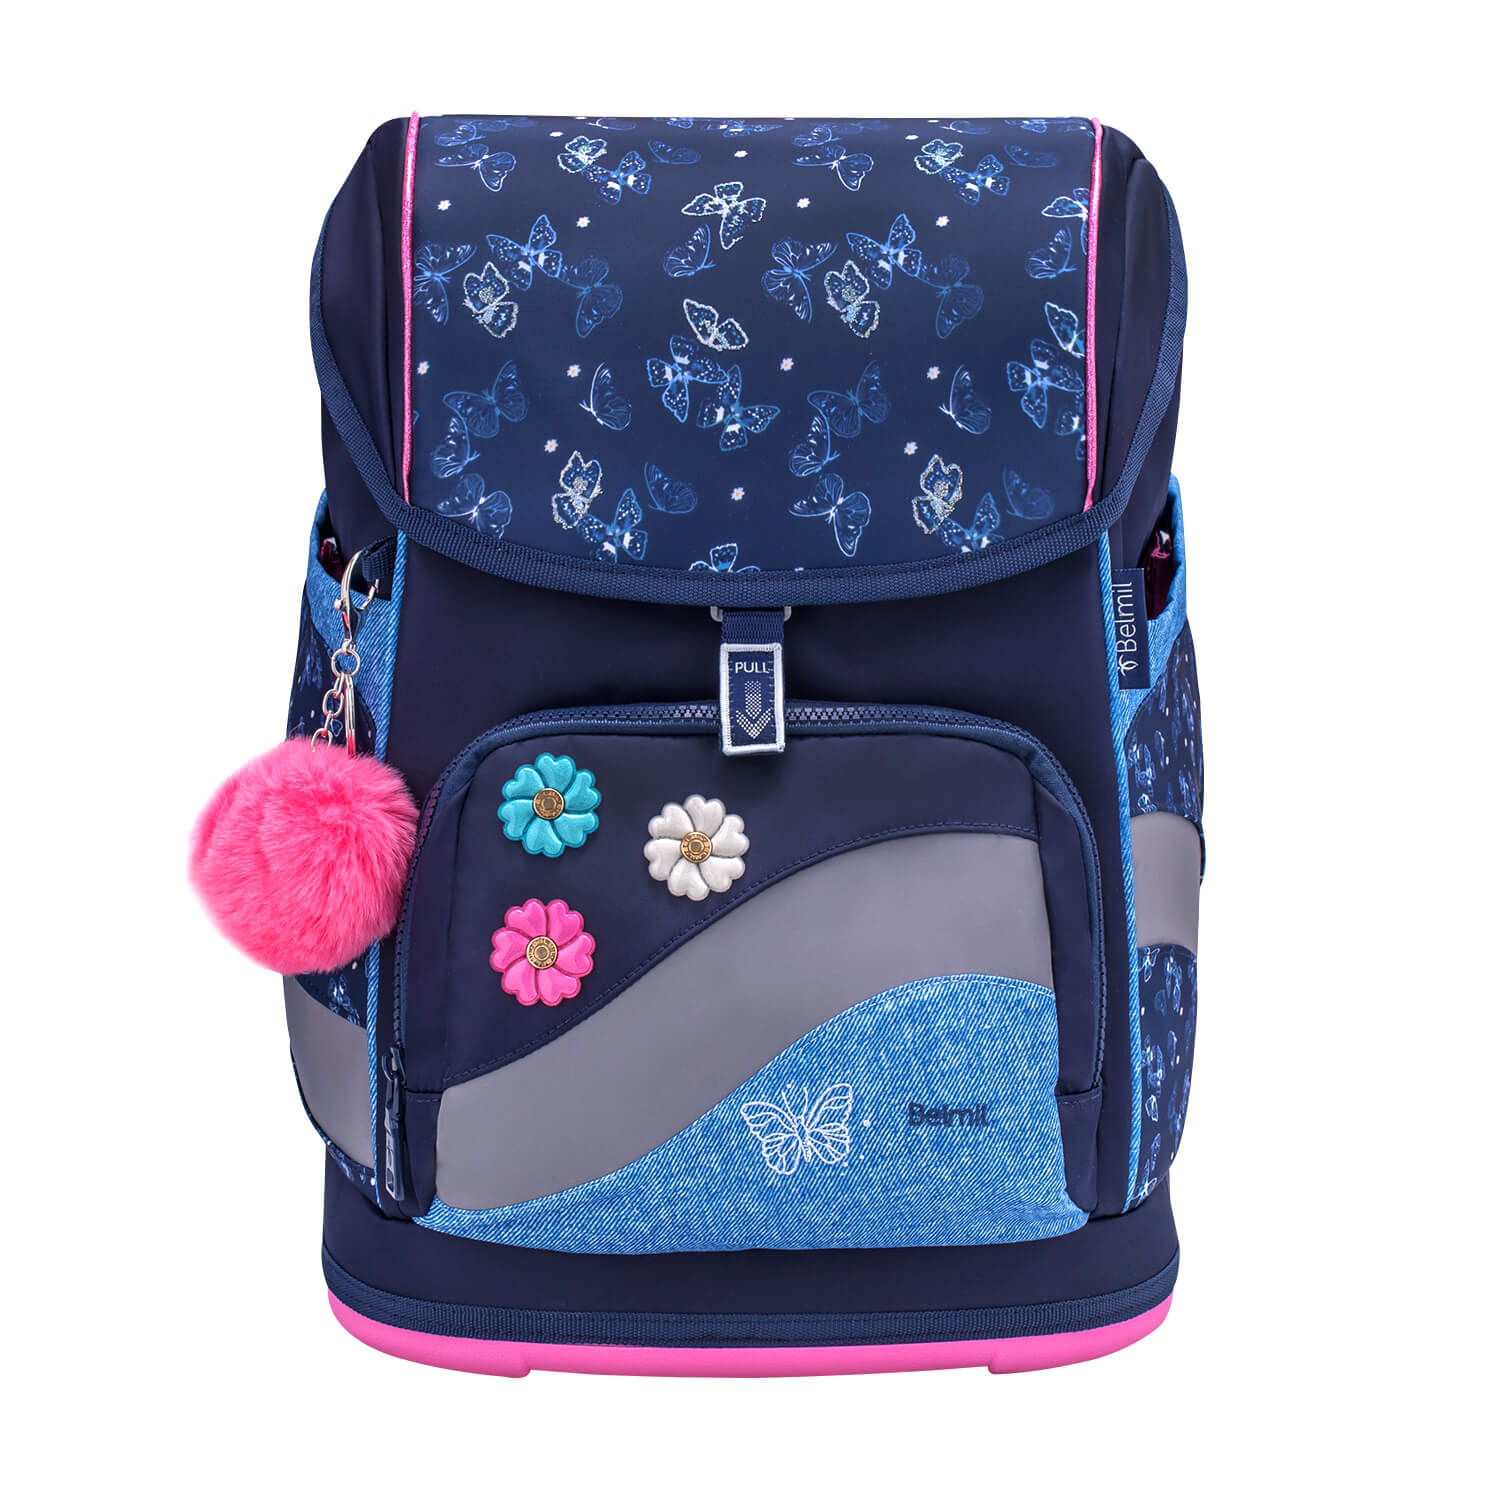 Smarty Plus Sapphire Schoolbag set 5pcs.